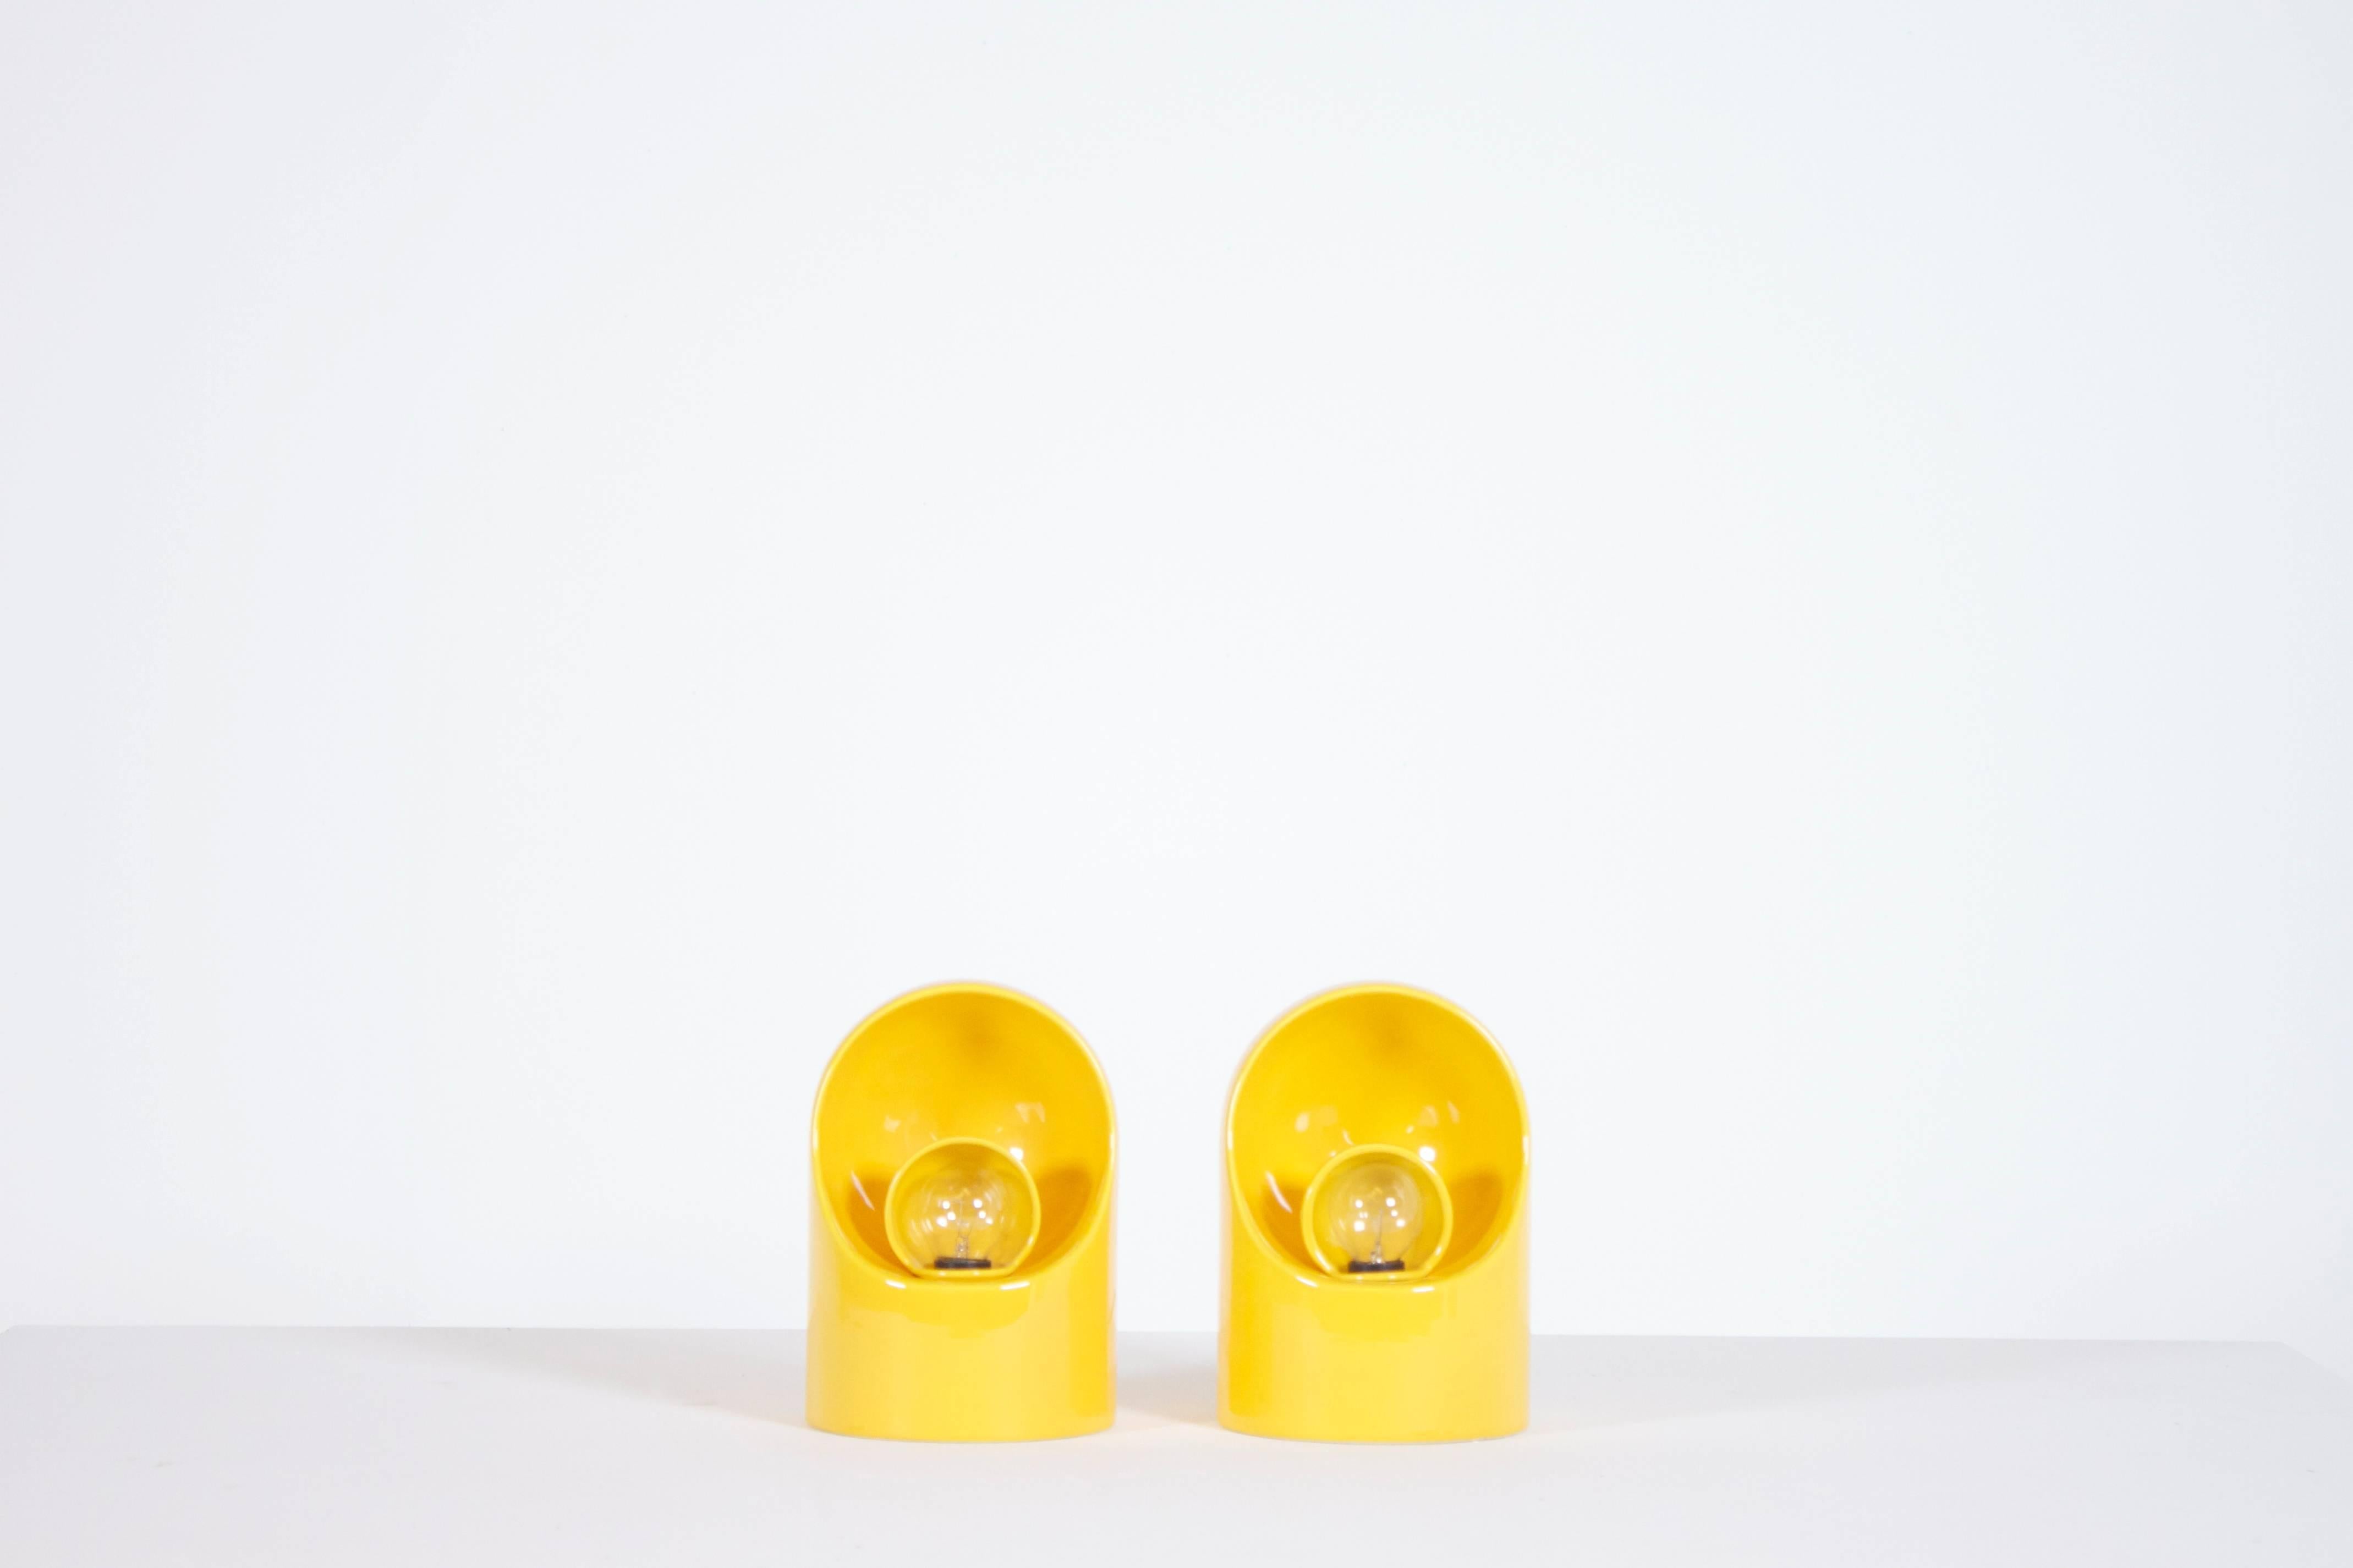 Set von Keramik-Tischlampen von Marcello Cuneo in einer schönen gelben Farbe.

Drehbarer Keramik-Schirm.

Markiert auf der Unterseite.

Diese Lampen sind in sehr gutem Zustand.

Wenn Sie Fragen haben, können Sie sich gerne an uns wenden.